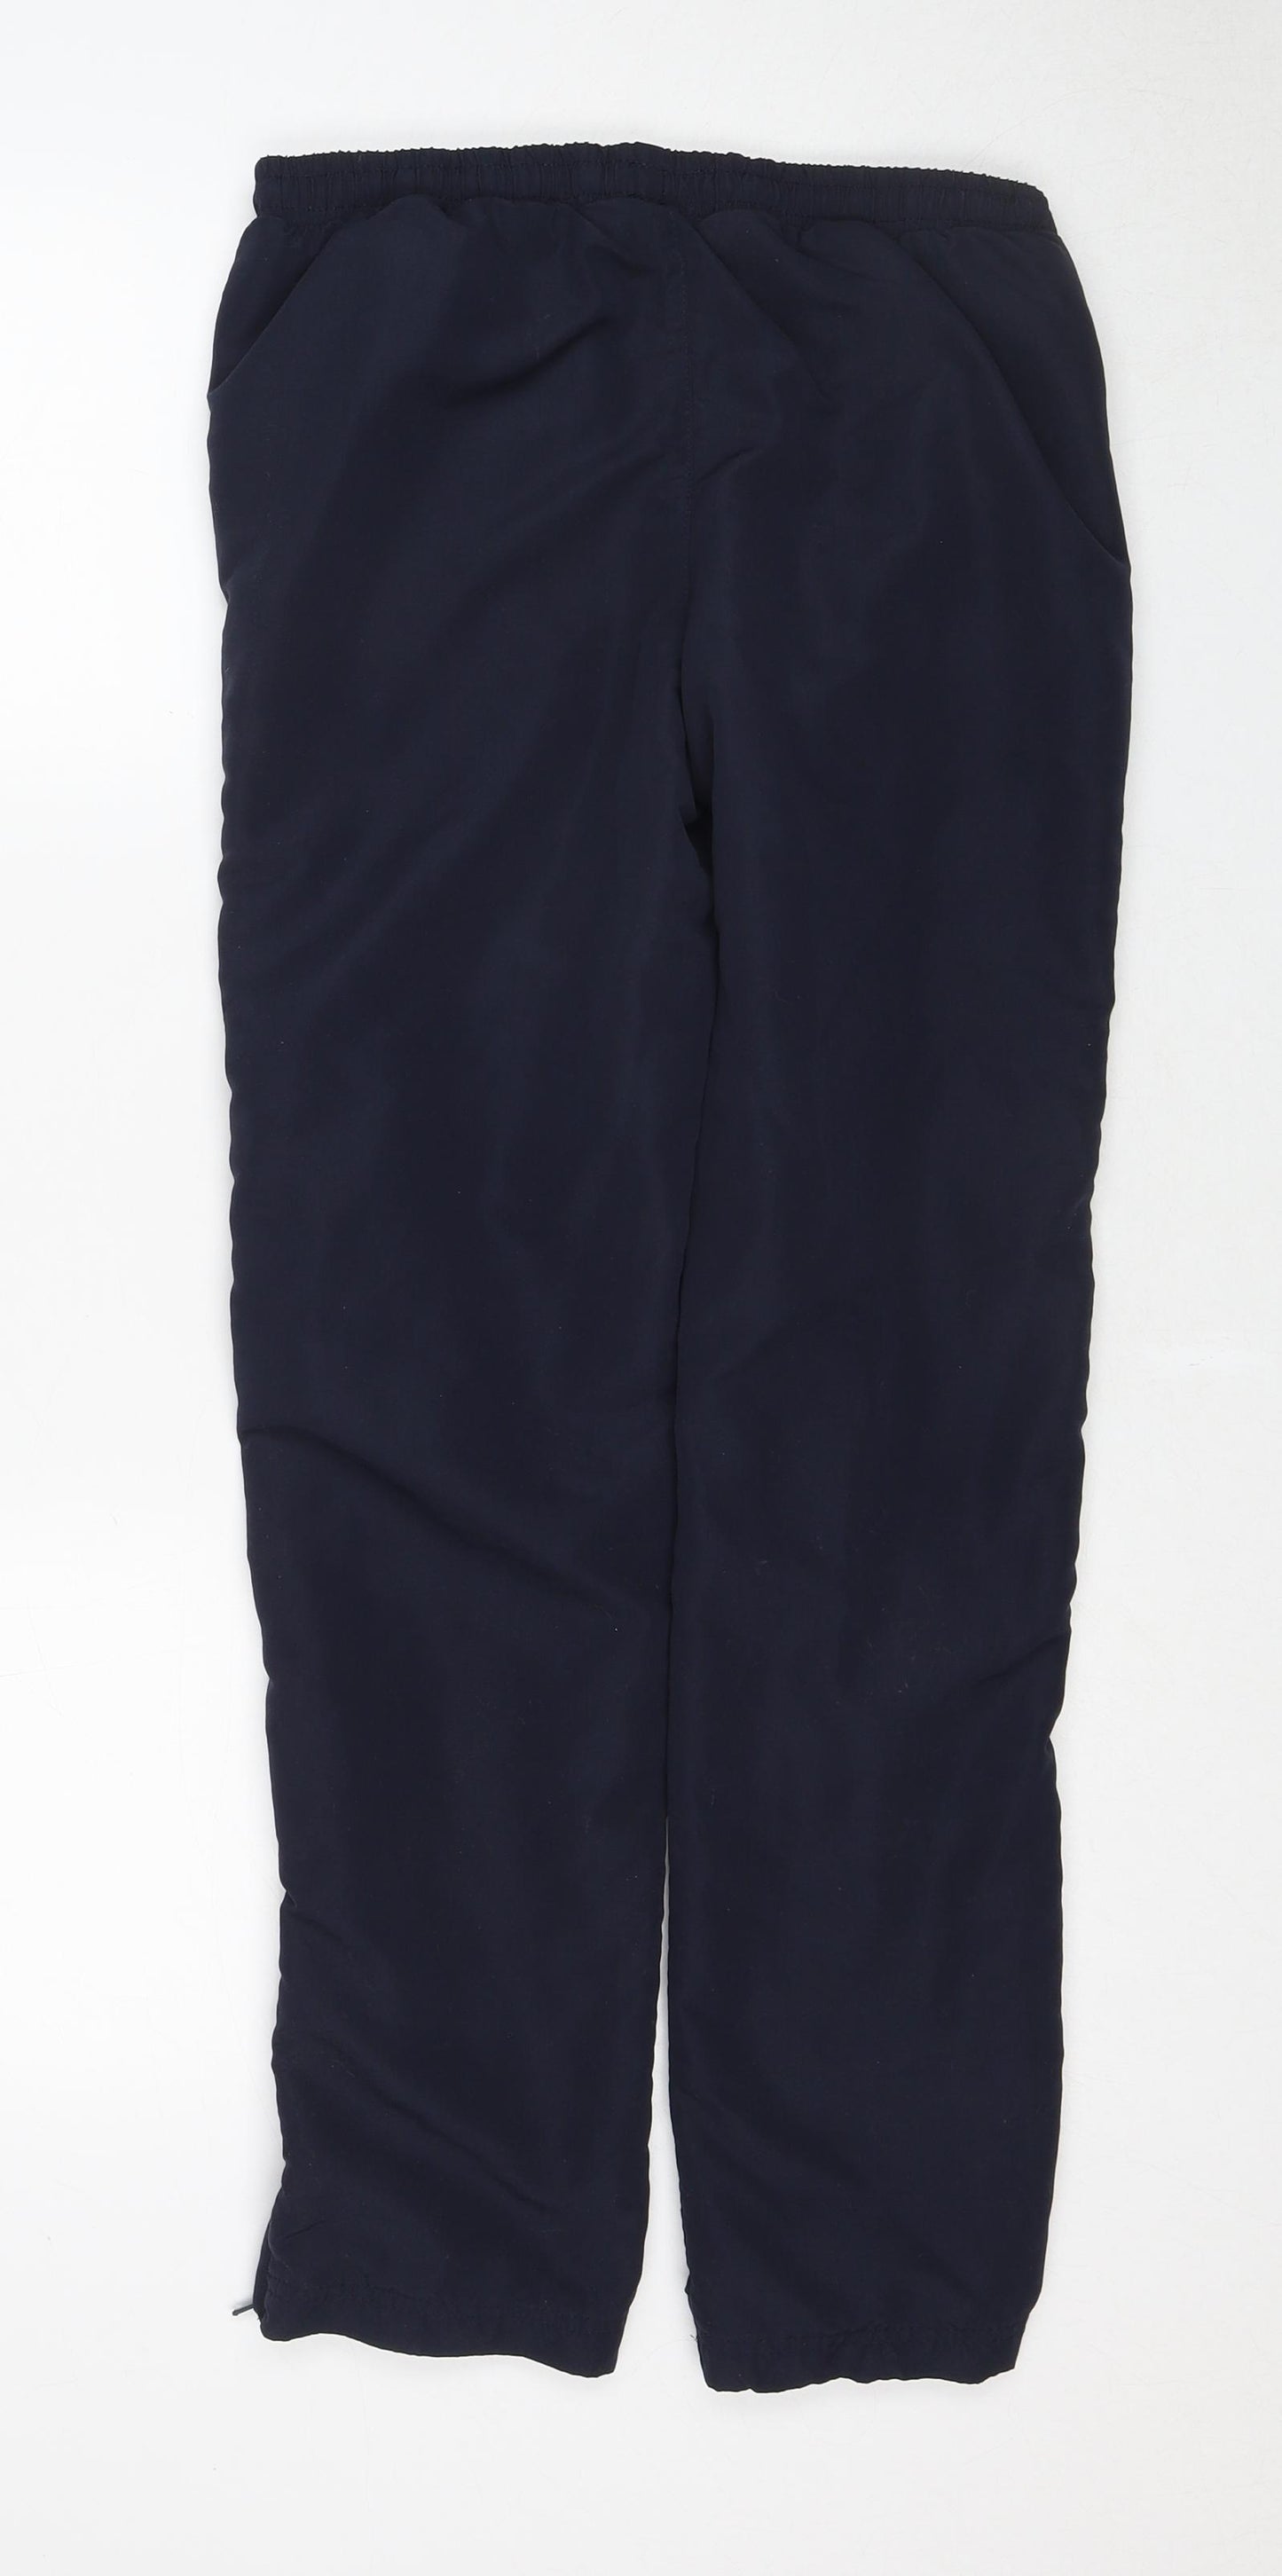 Slazenger Boys Blue Polyester Jogger Trousers Size 13 Years Regular Drawstring